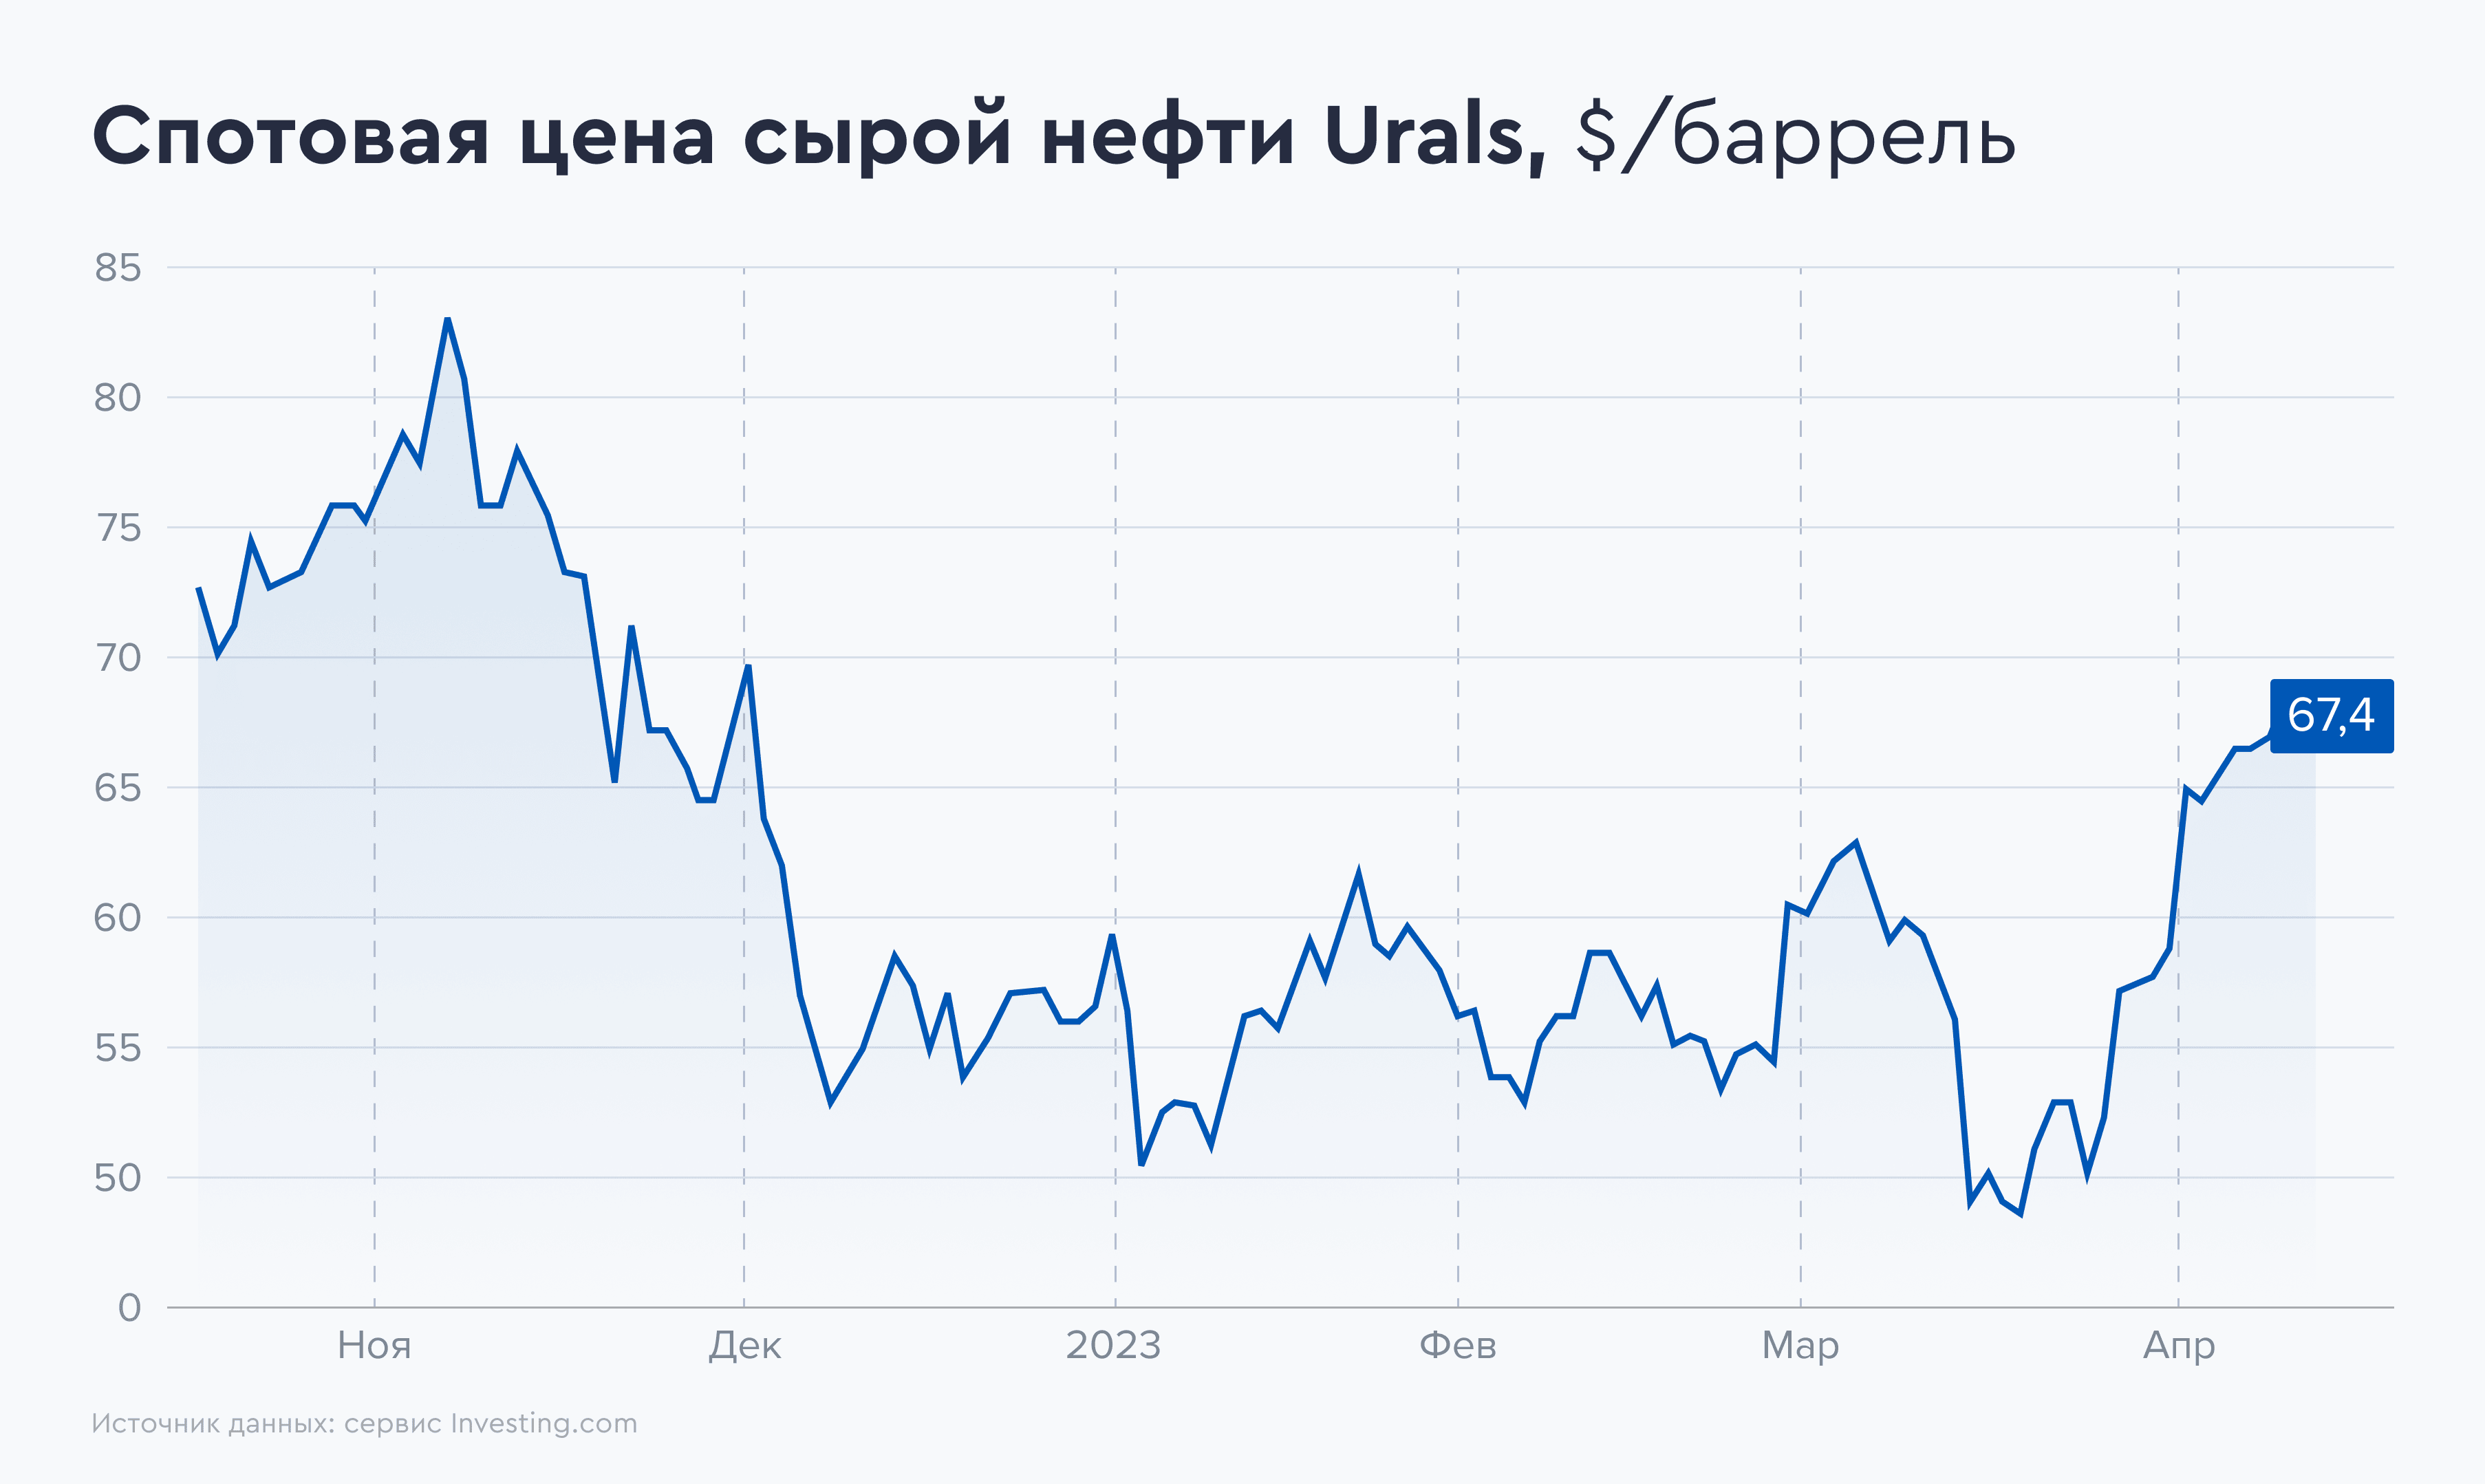 Спотовая цена нефти urals в реальном времени. Акции Лукойл дивиденды. Баррель Лукойл. Акции Лукойл динамика за 5 лет график.